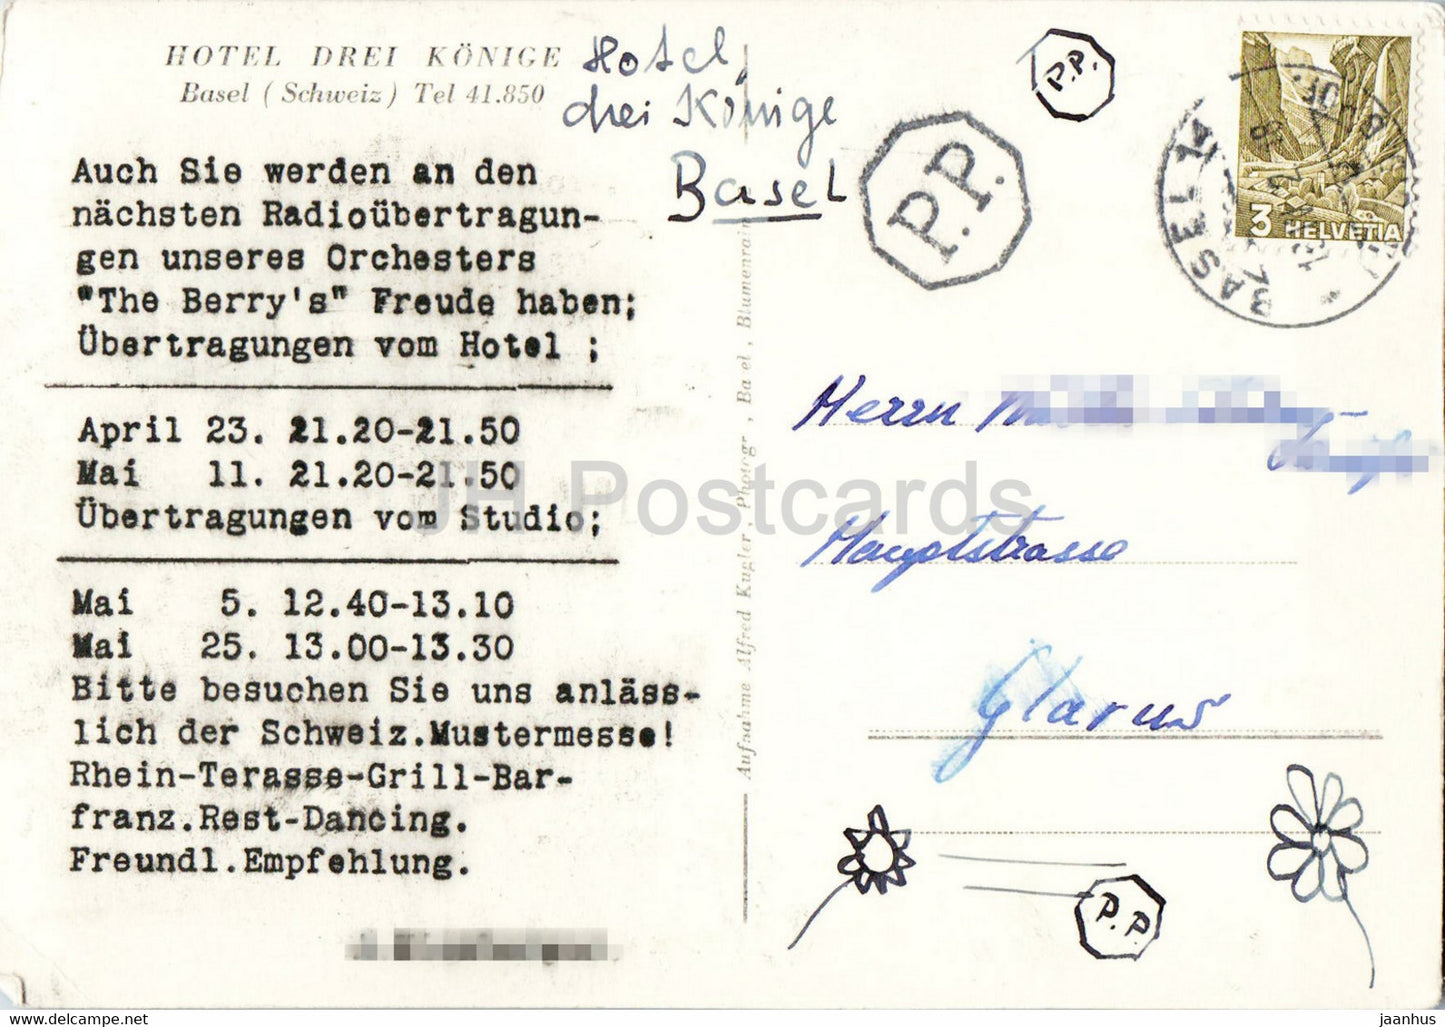 Bâle - Hôtel Drei Konige - pont - 547 - carte postale ancienne - Suisse - utilisé